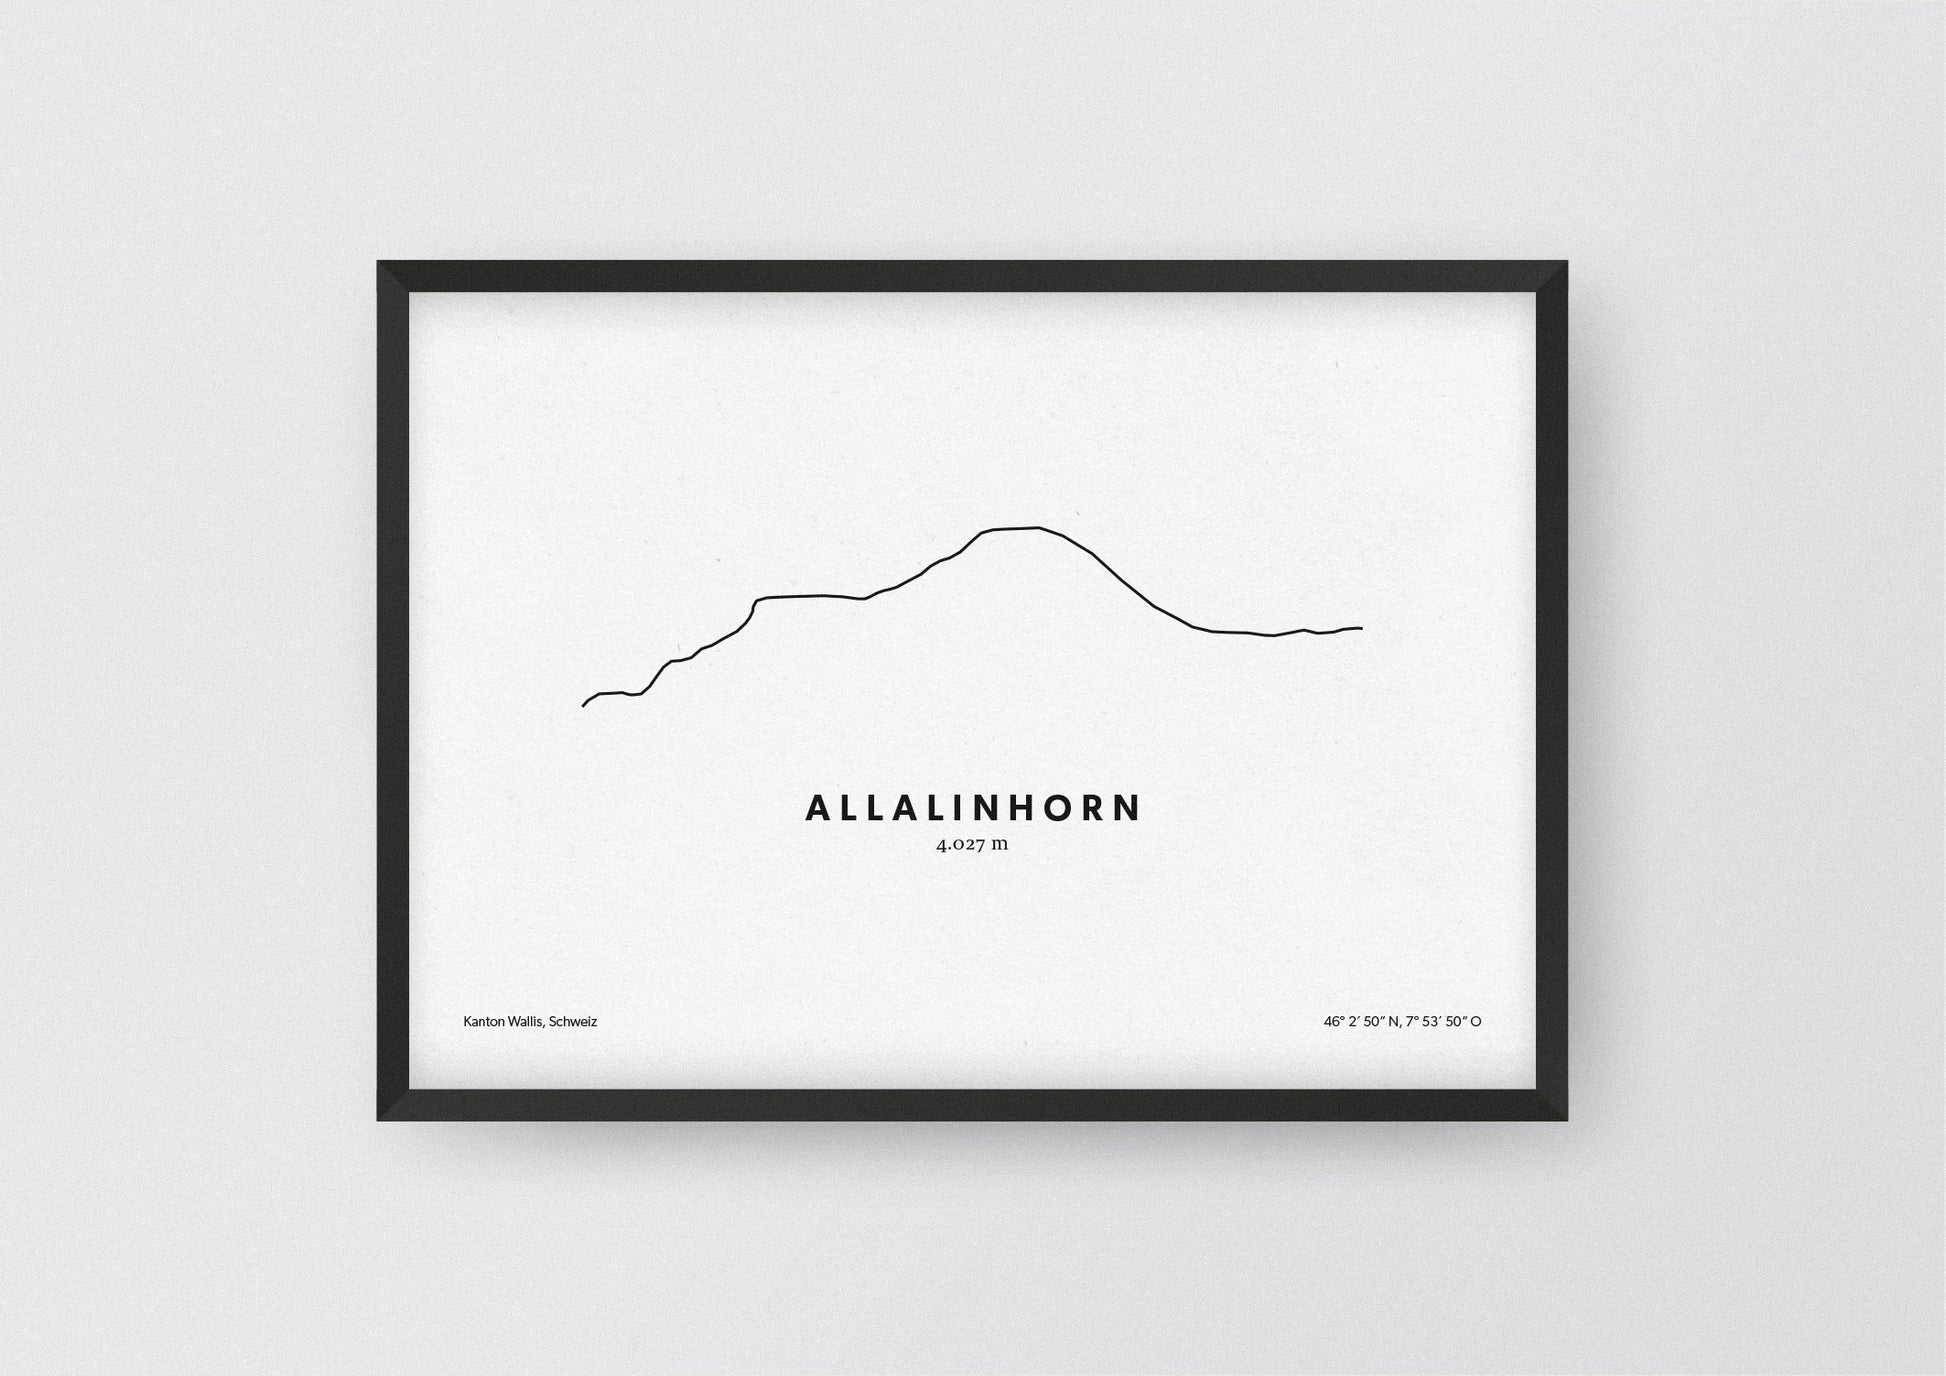 Minimalistische Illustration des Allalinhorn in den Walliser Alpen, als stilvoller Einrichtungsgegenstand für Zuhause.